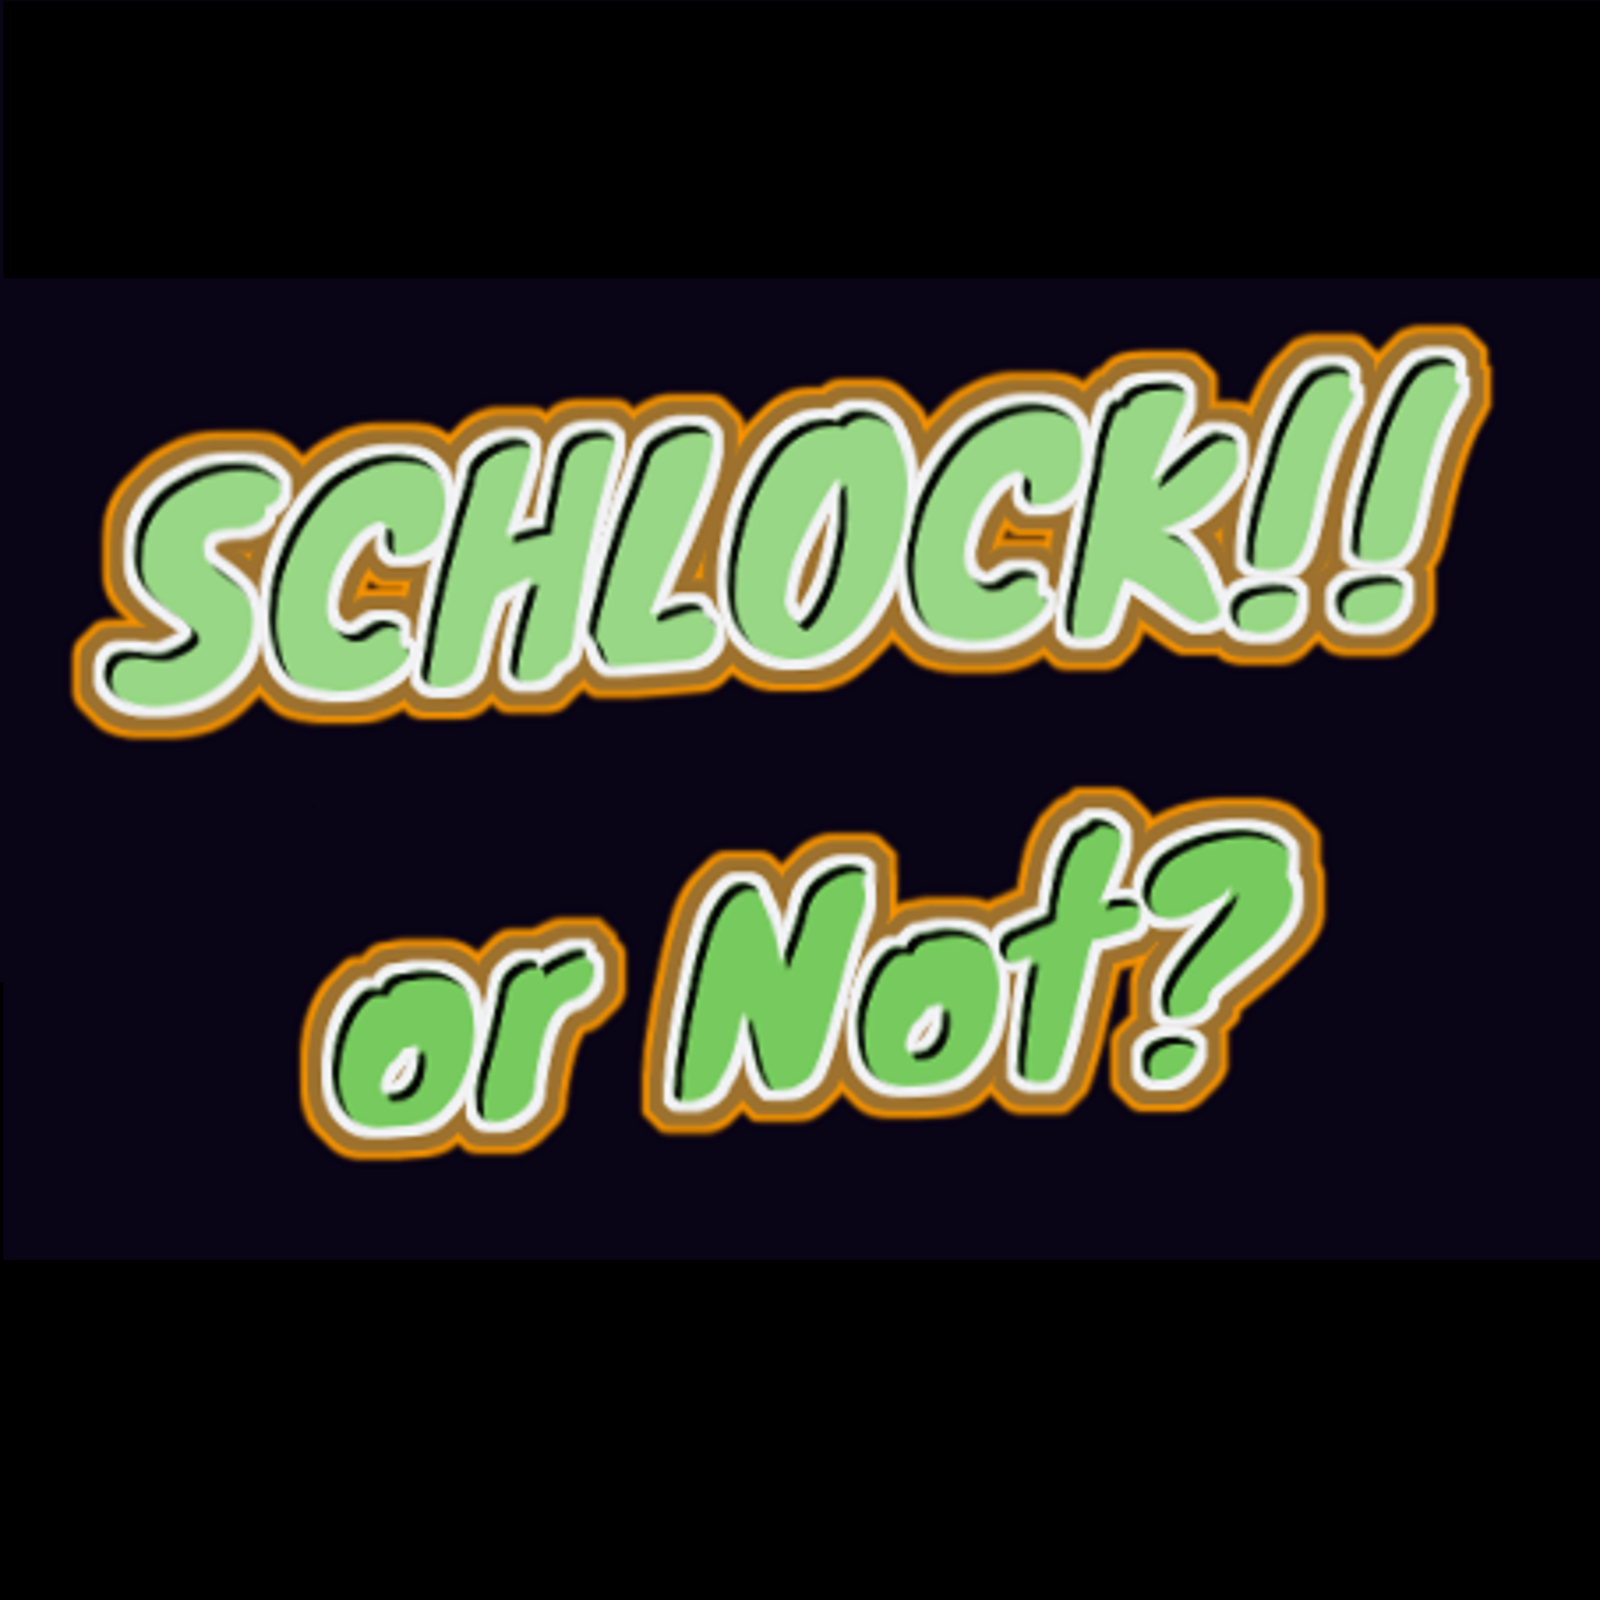 Schlock or Not